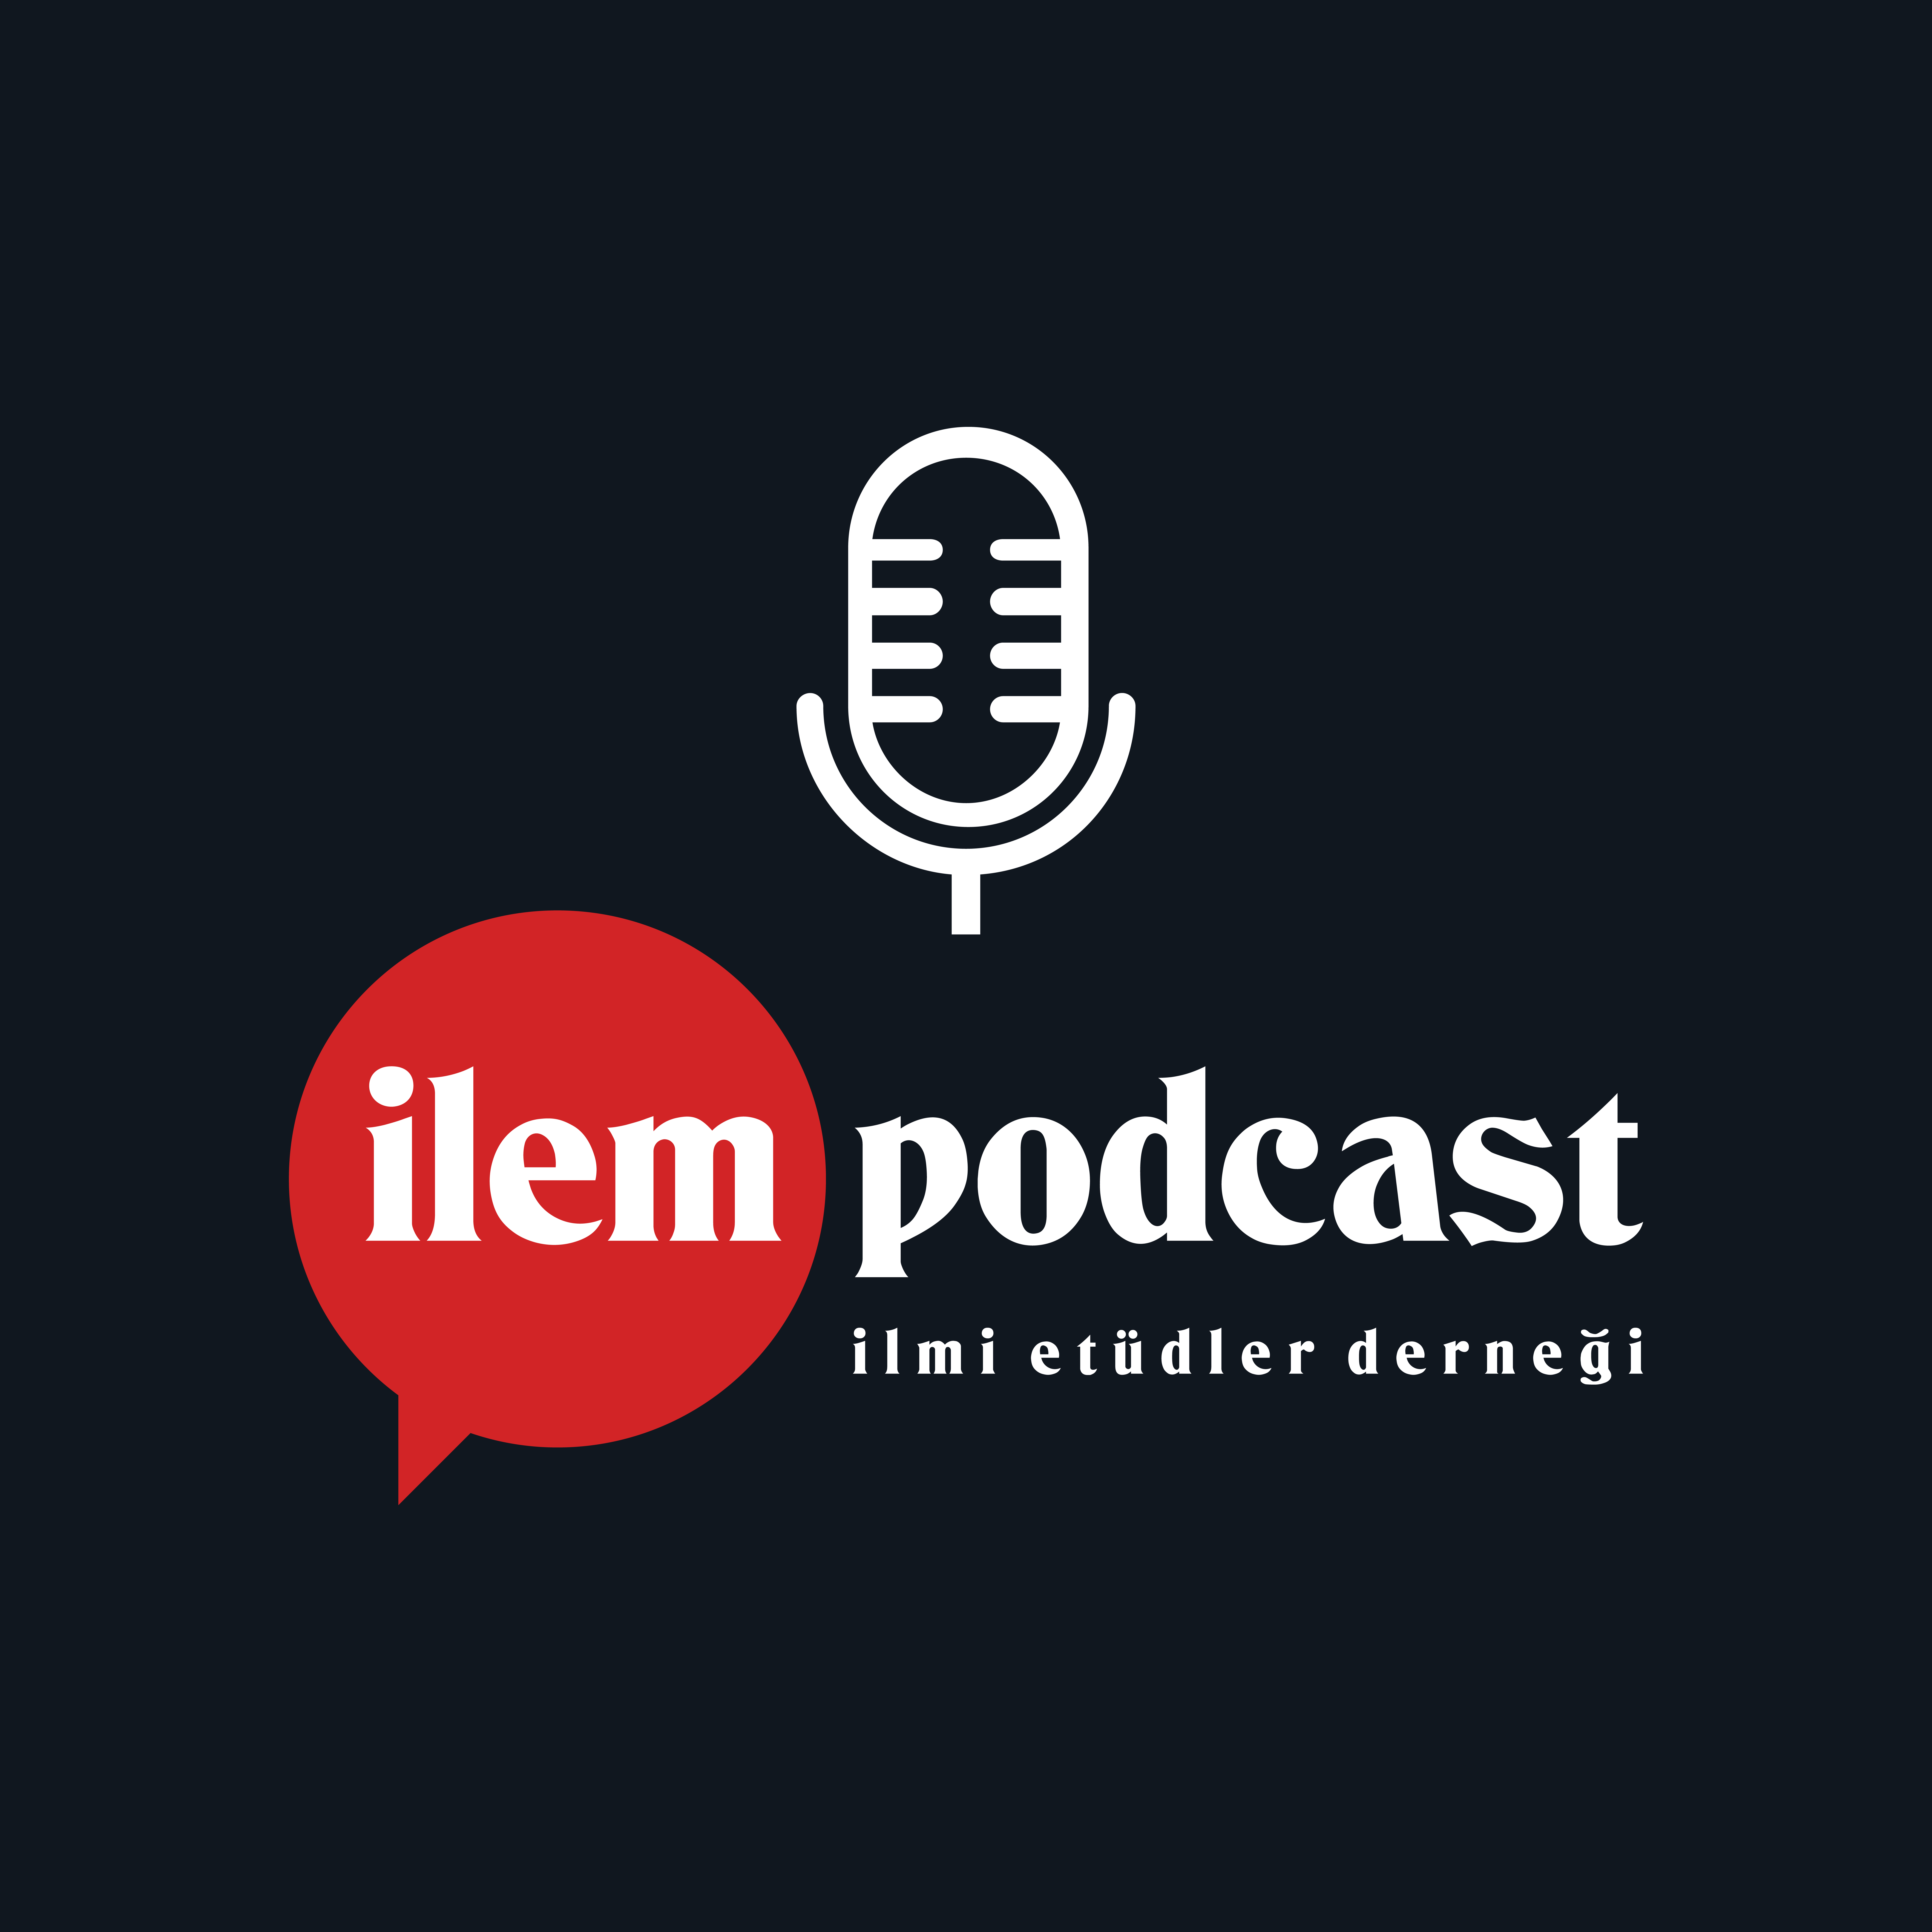 İLEM Podcast’te Yeni İçerikler